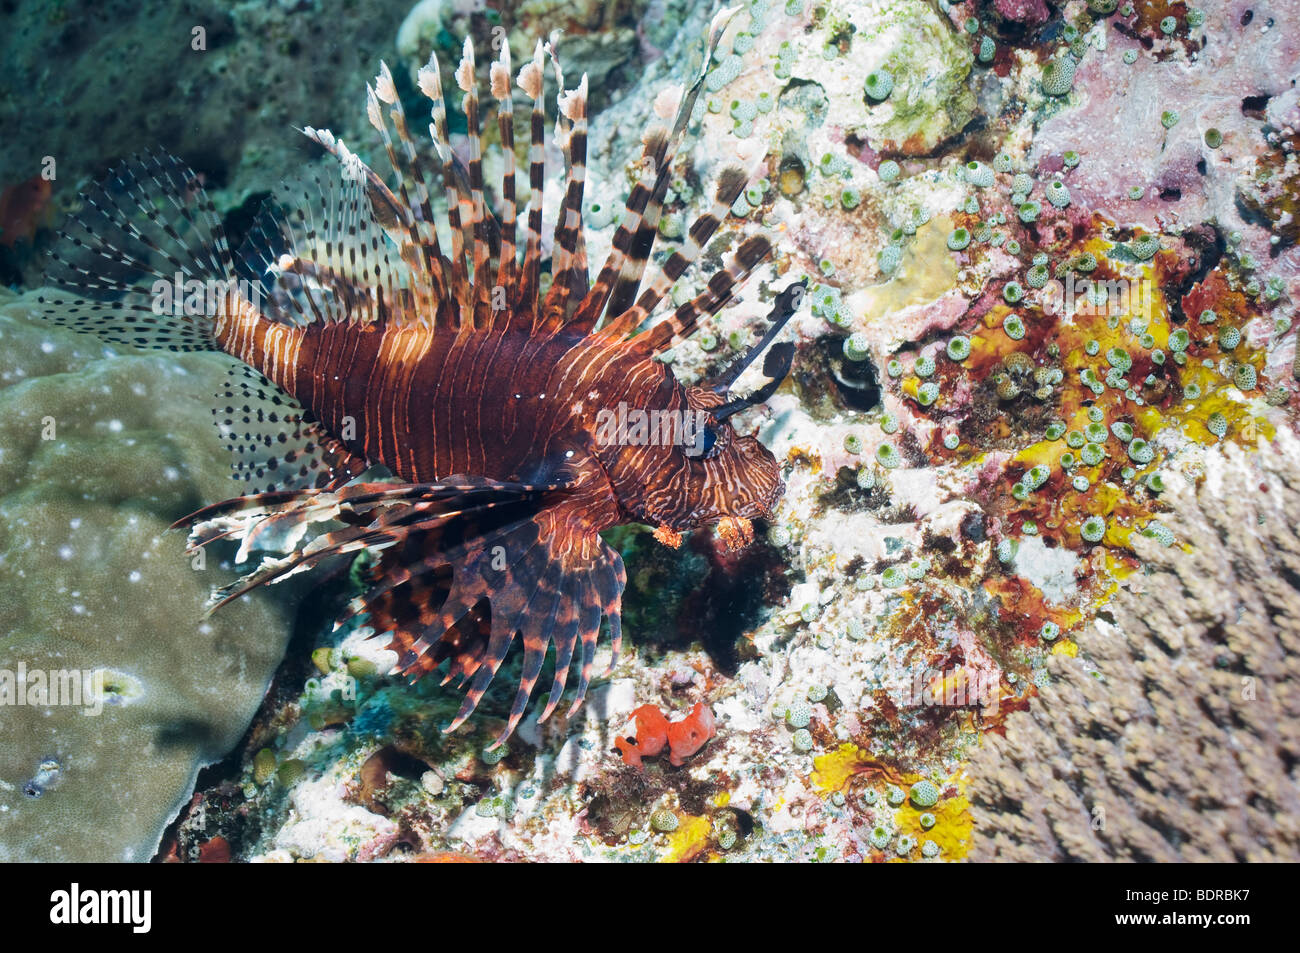 Poisson-papillon ou Turkeyfish (Pterois volitans) la chasse. Rinca, Indonésie. Banque D'Images